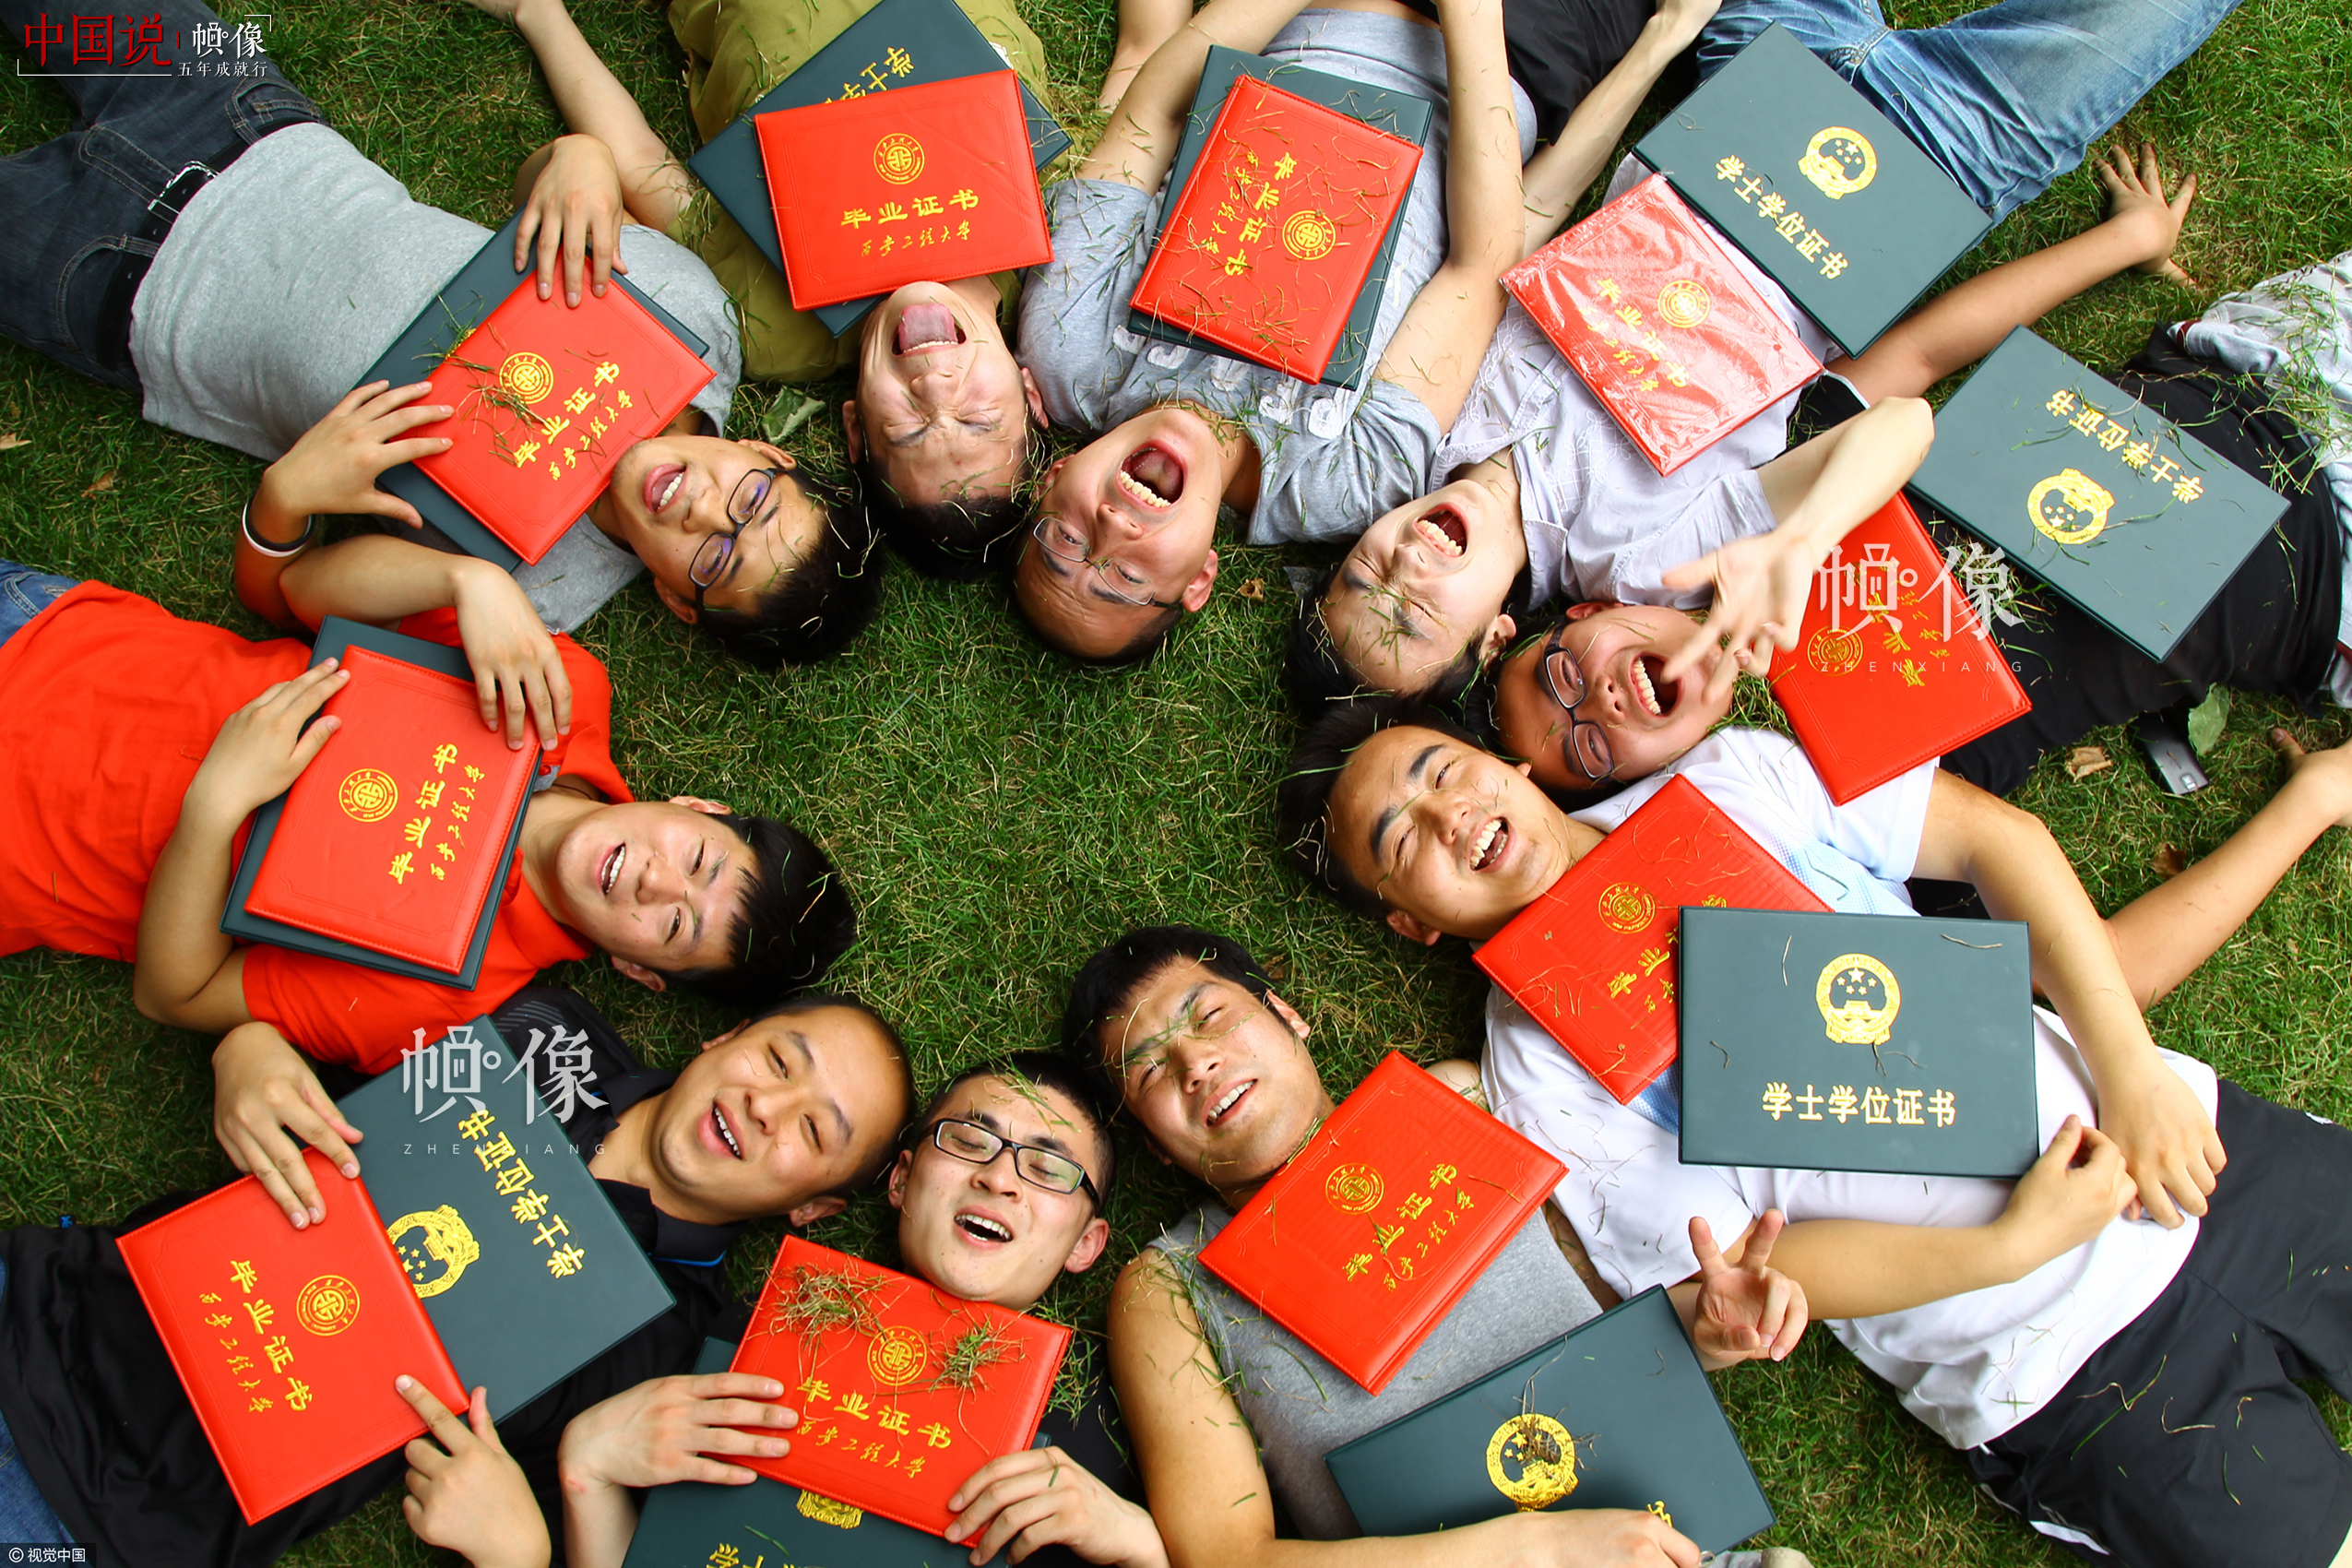 2012年6月28日，西安工程大学校园内，2008届艺术设计班的几位同学拿着毕业证和学位证躺在草地上。吕松杨是其中一位，他说现在的大学生多得犹如地上的青草，但我们愿从草根做起，拾级而上为梦想拼搏。视觉中国供图